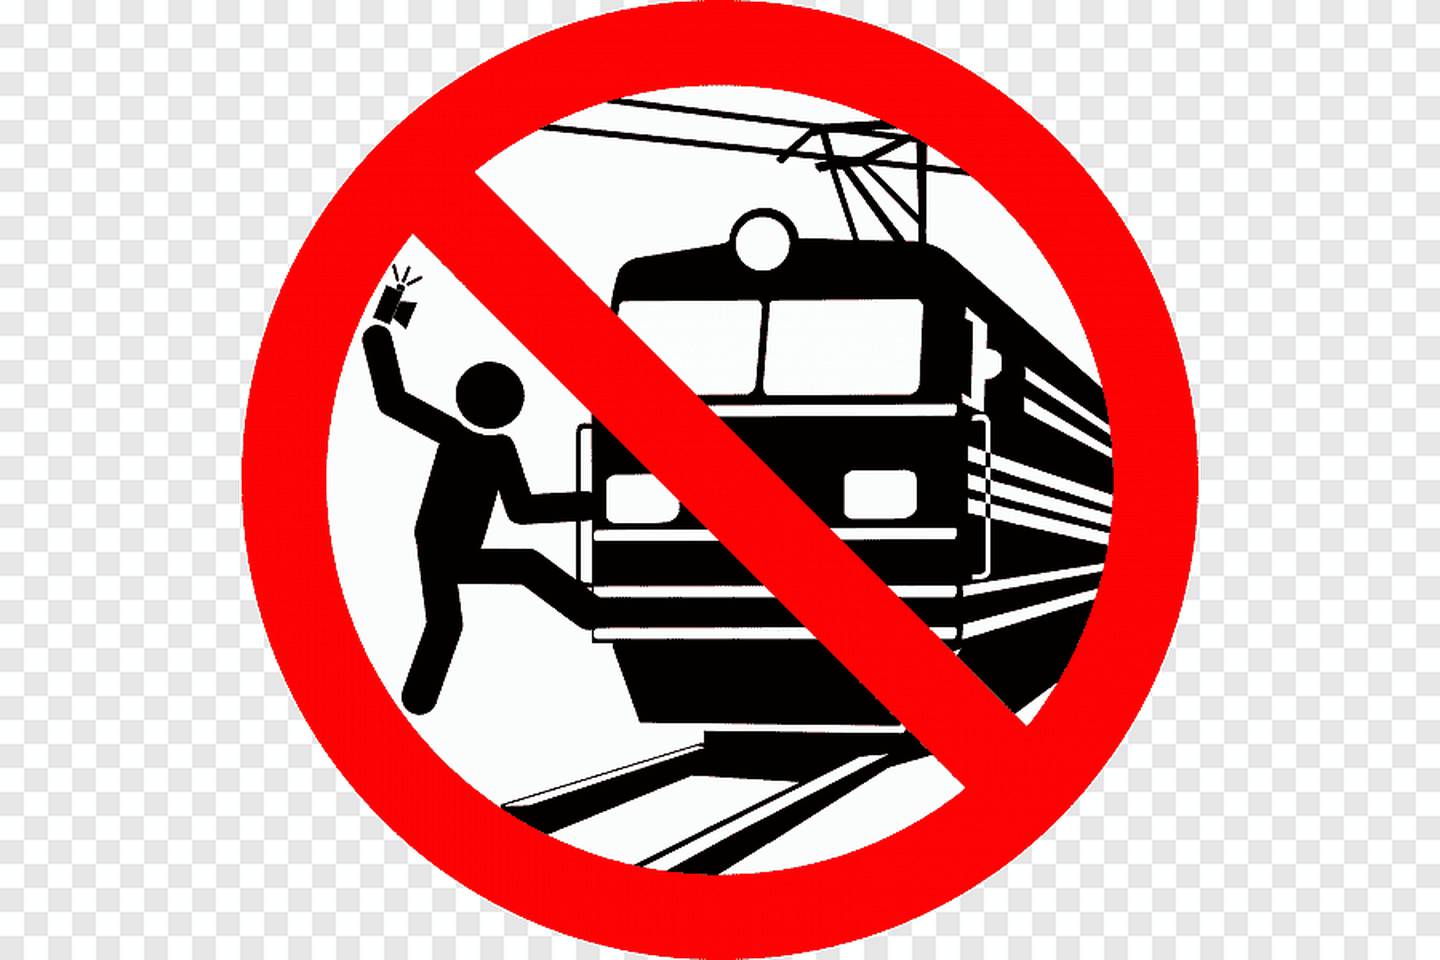 Детям в поезде запрещается